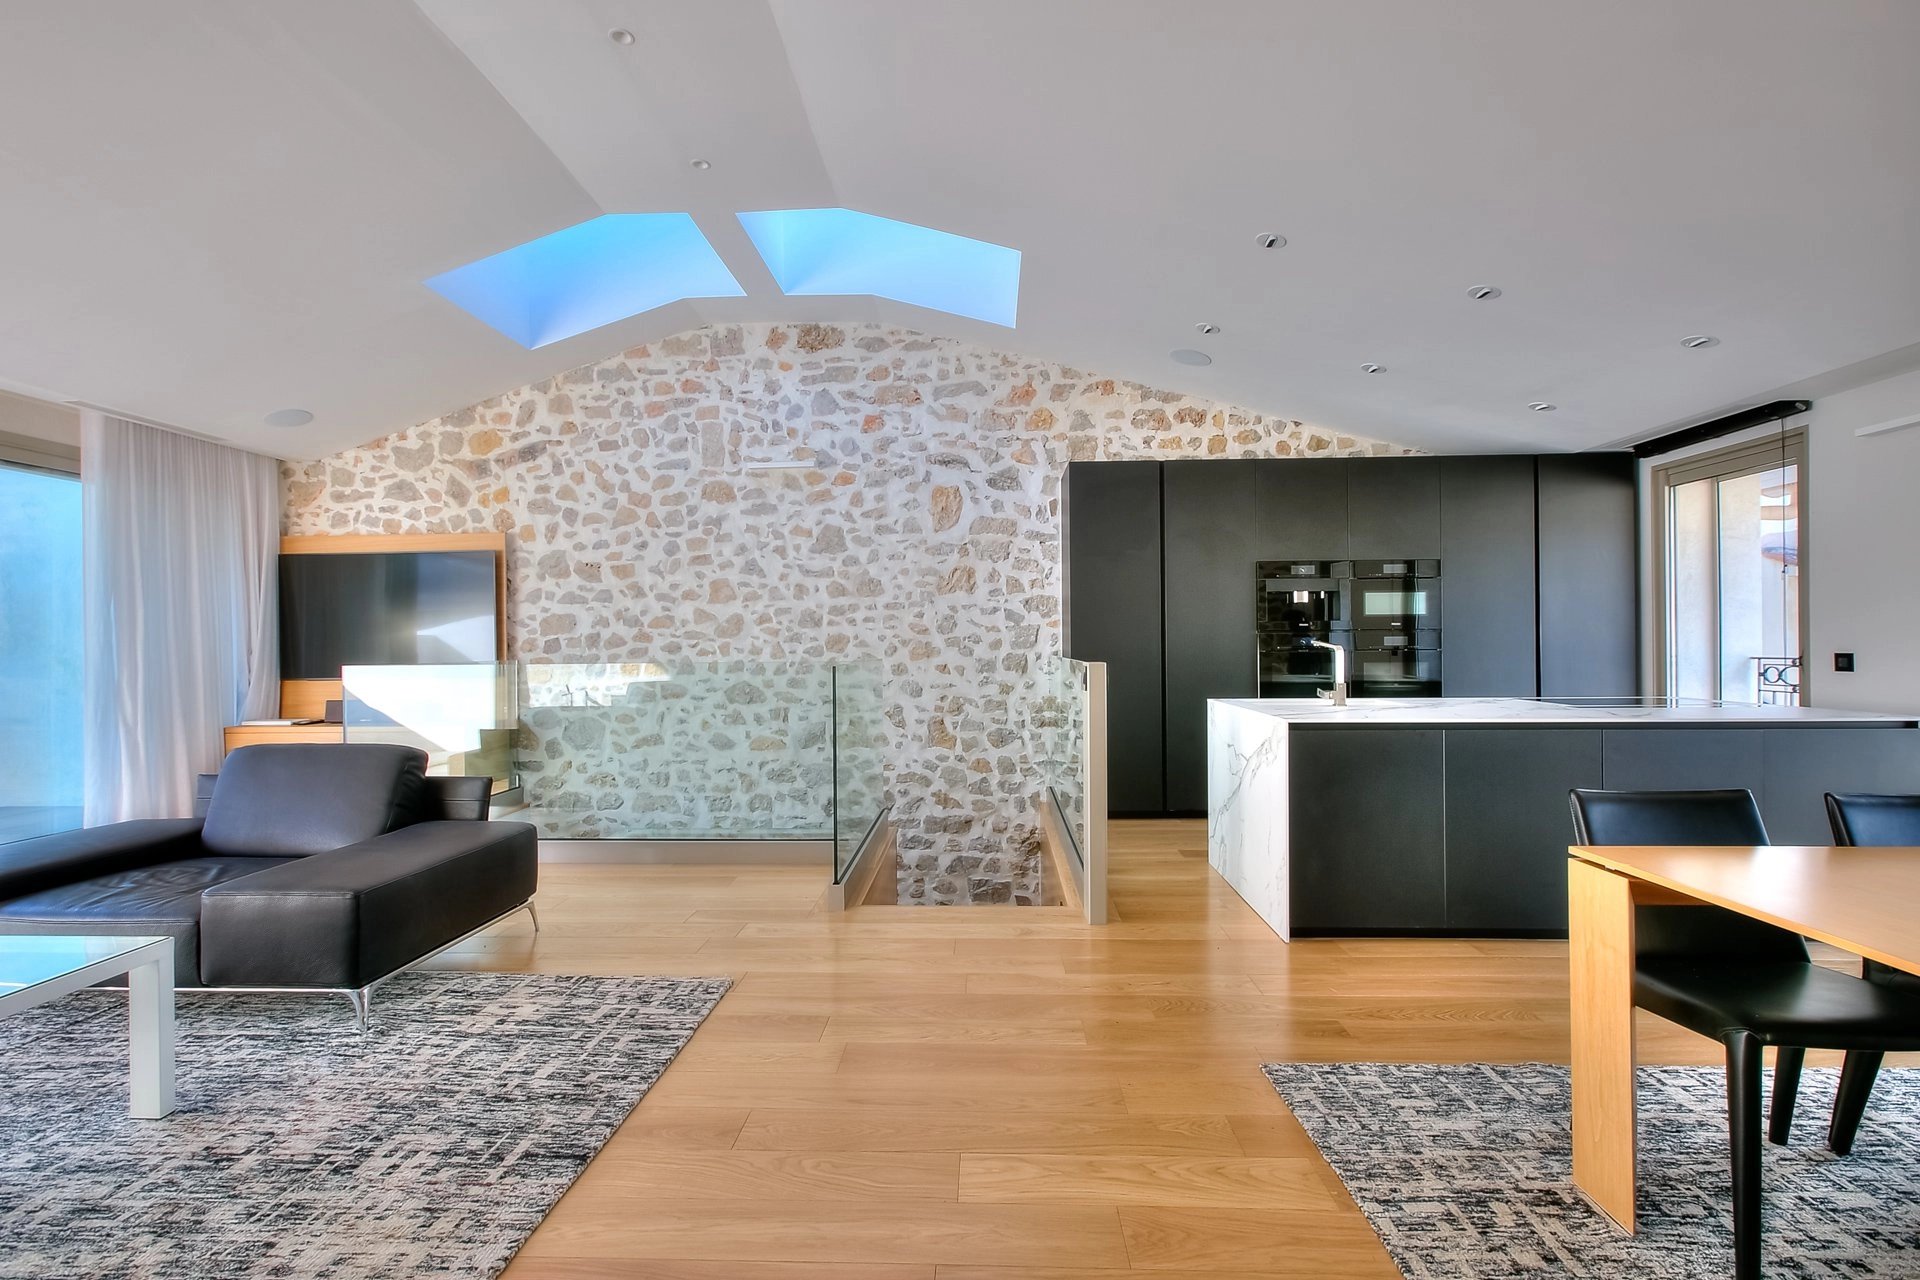 Living-room Skylight Natural light Wooden floor